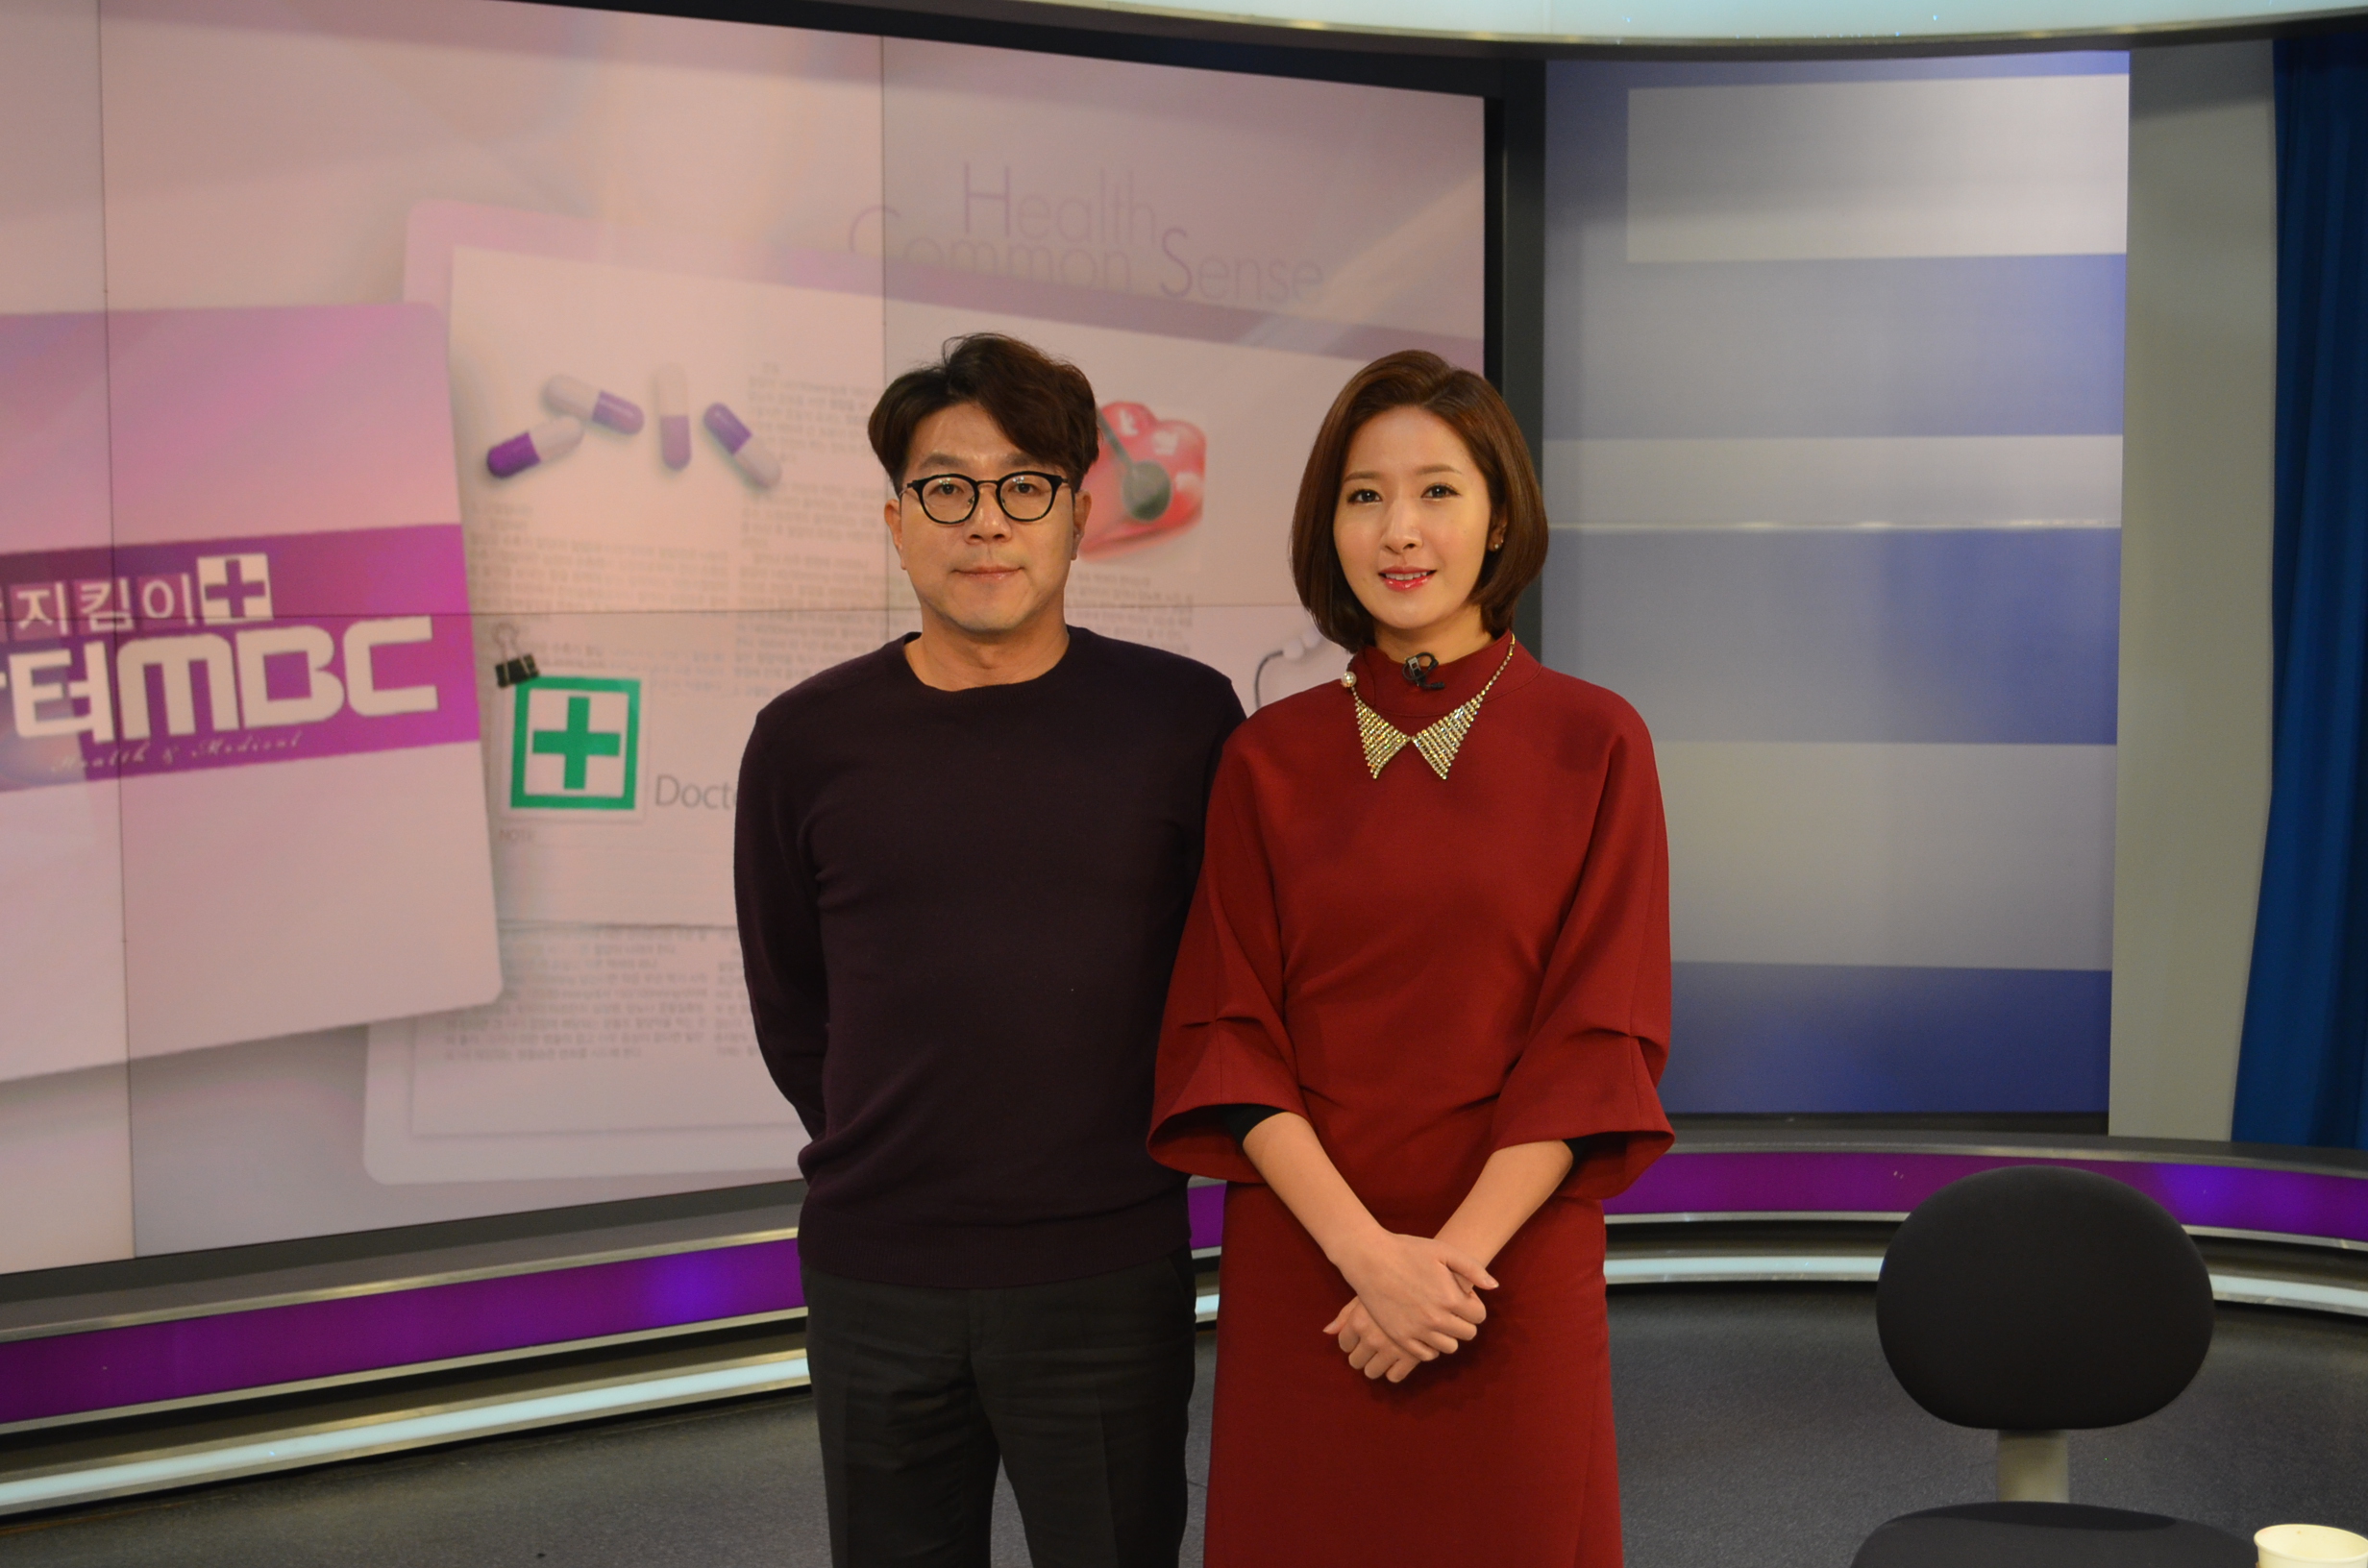 임건묵 대표원장님 봄맞이 건강 피부만들기 관련 MBC방송 영상입니다.